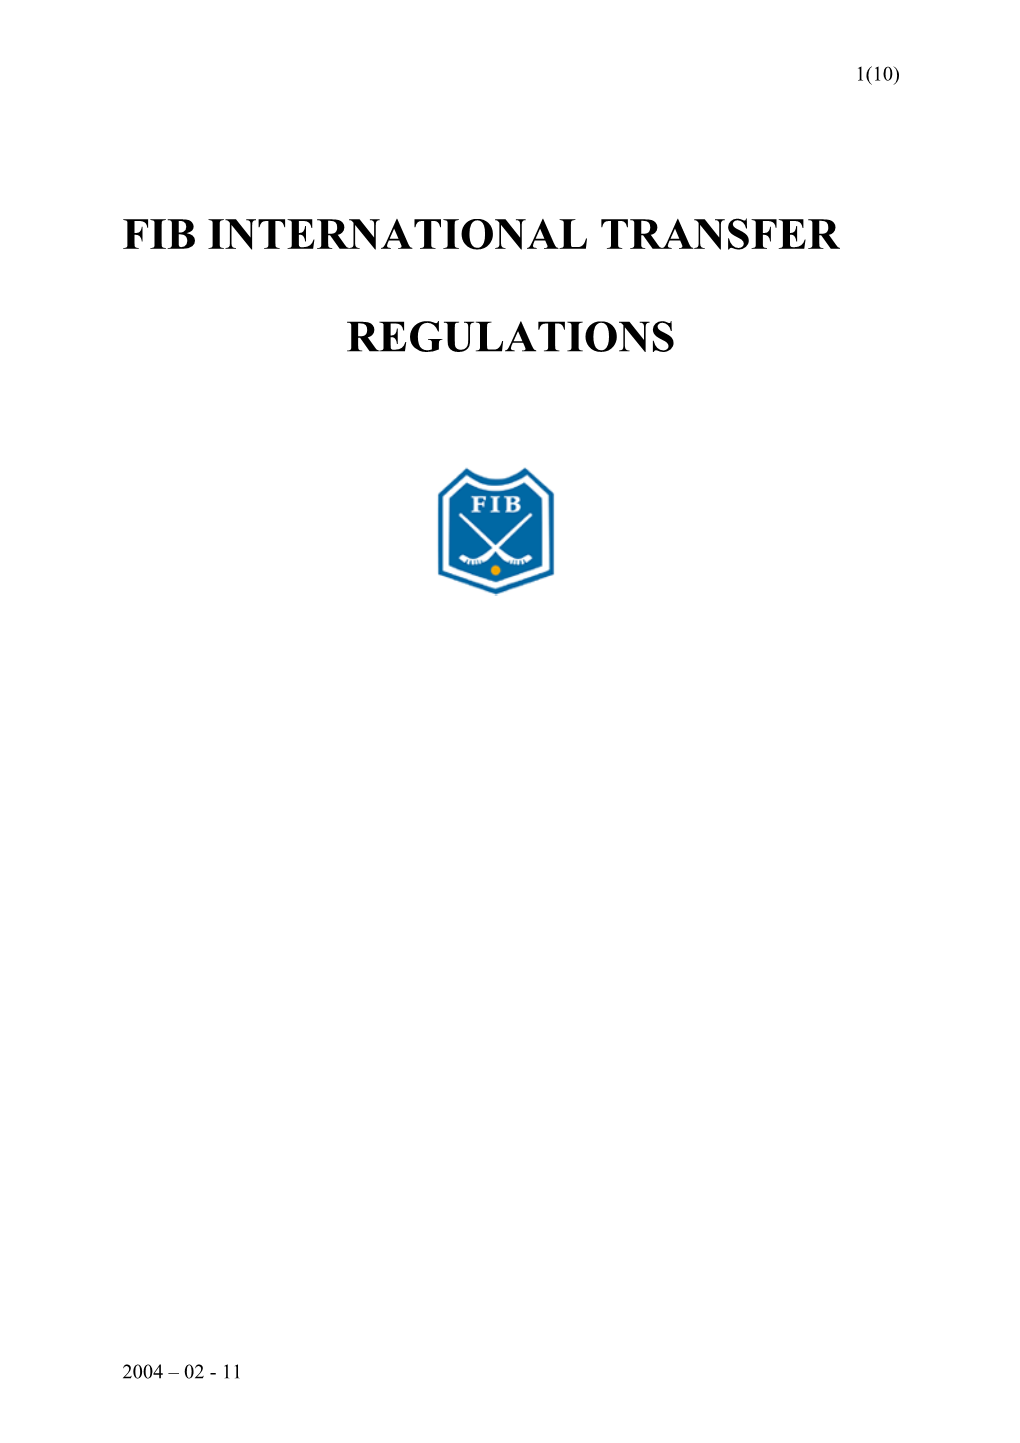 International Transfer Regulations